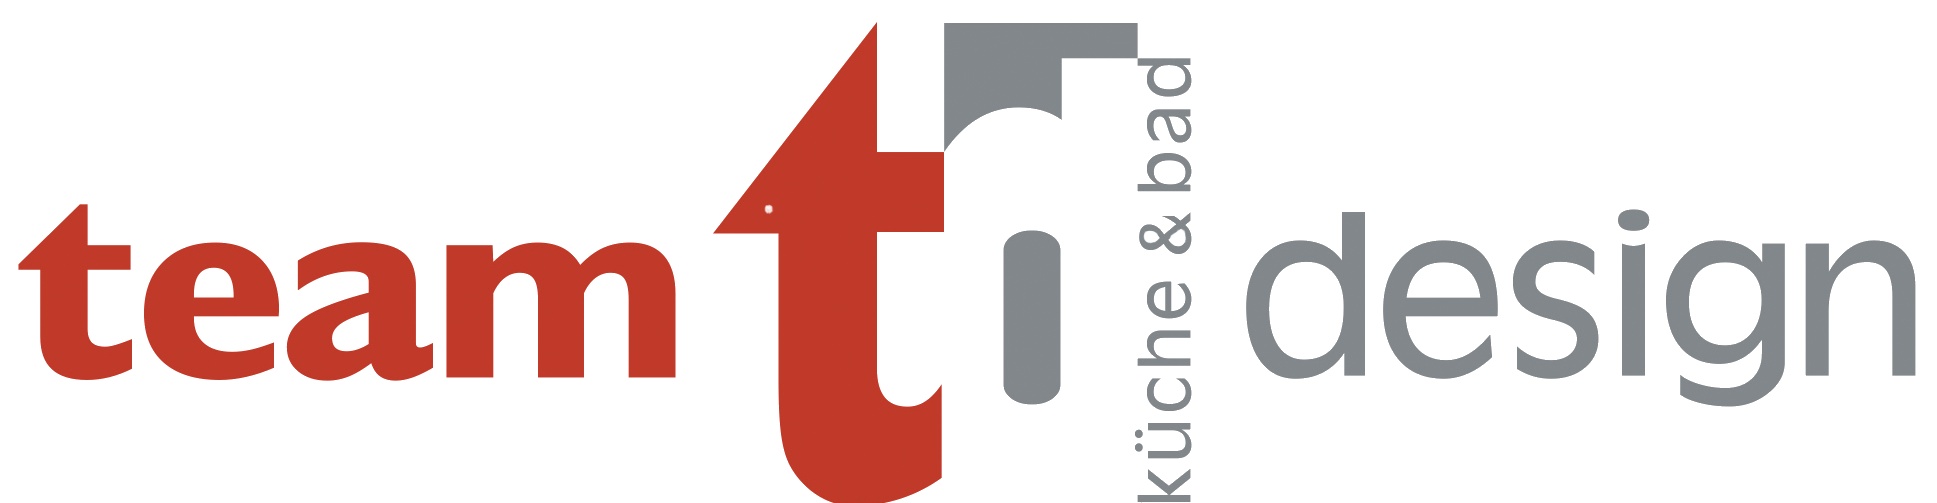 Teamdesign Logo